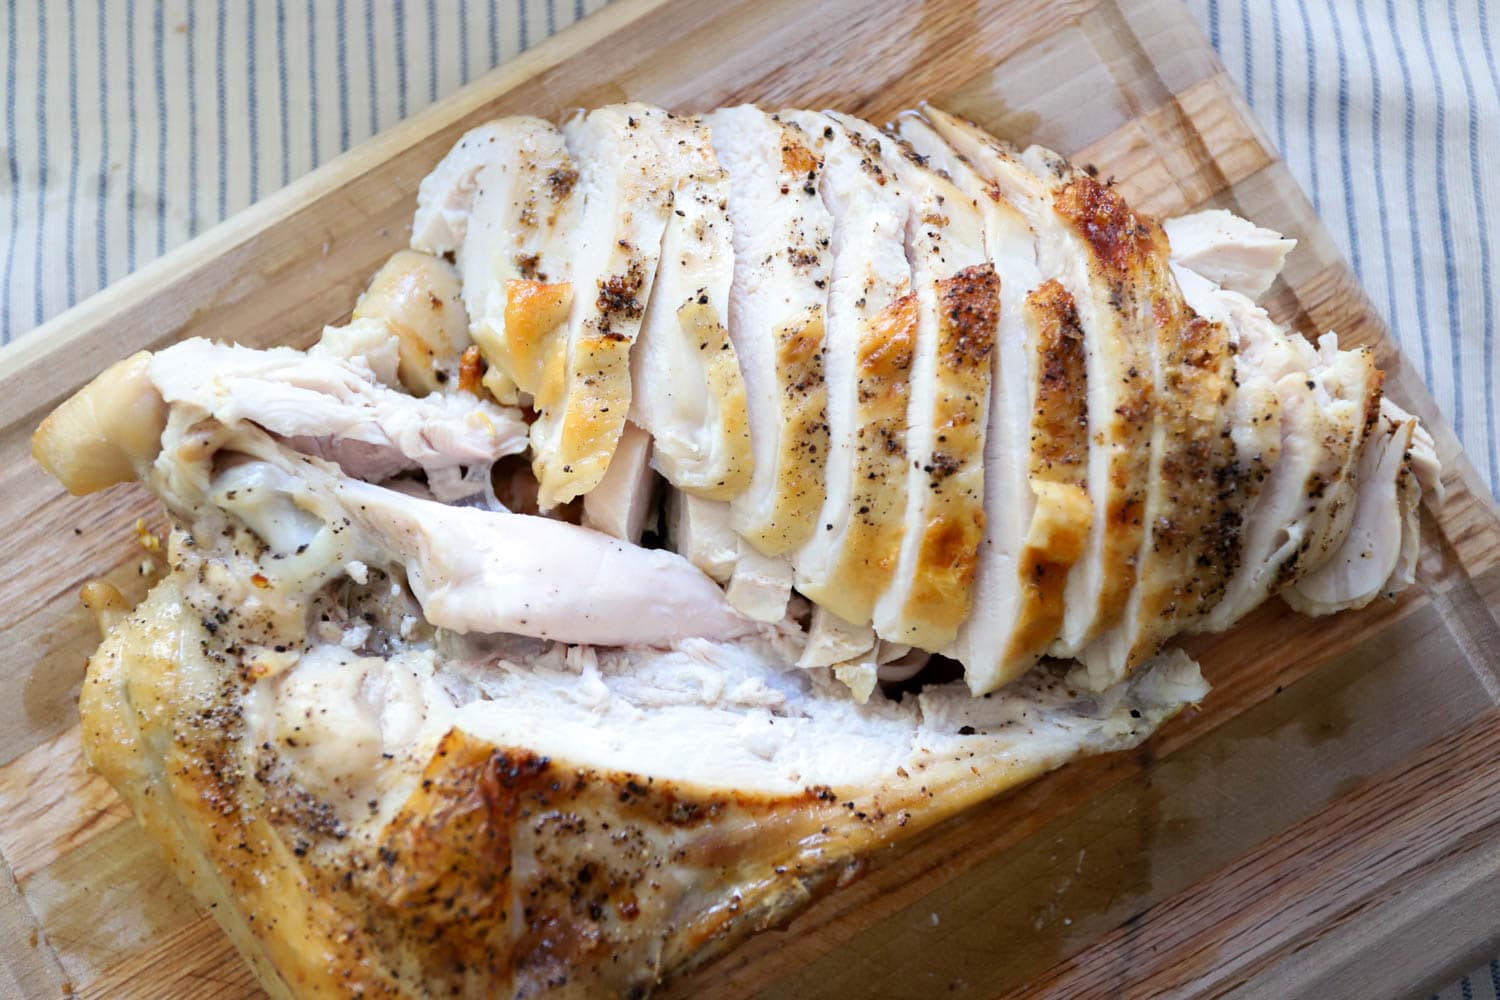 roasted turkey breast with bone sliced on wood cutting board.